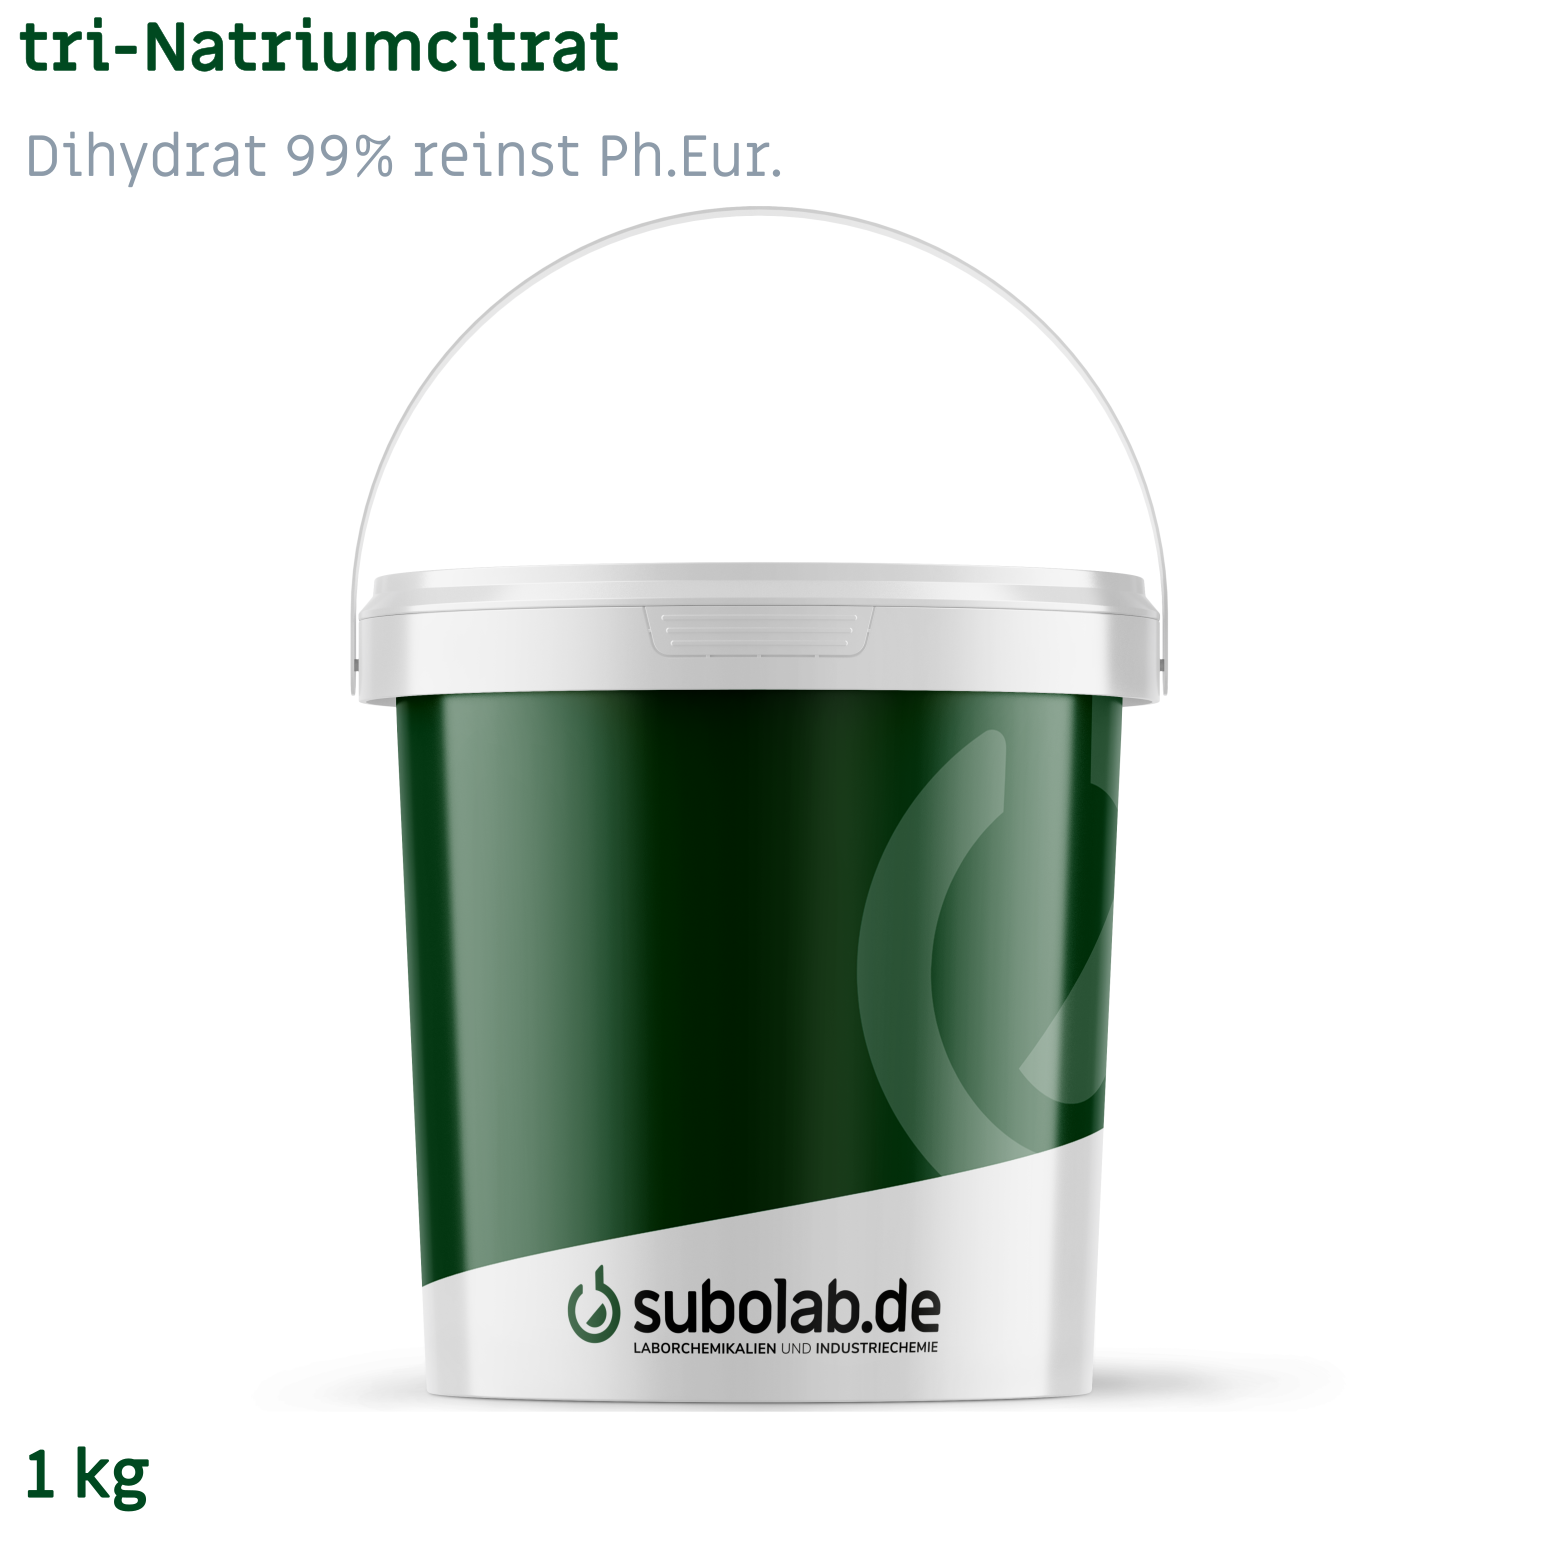 Bild von tri-Natriumcitrat - Dihydrat 99% reinst Ph.Eur. (1 kg)